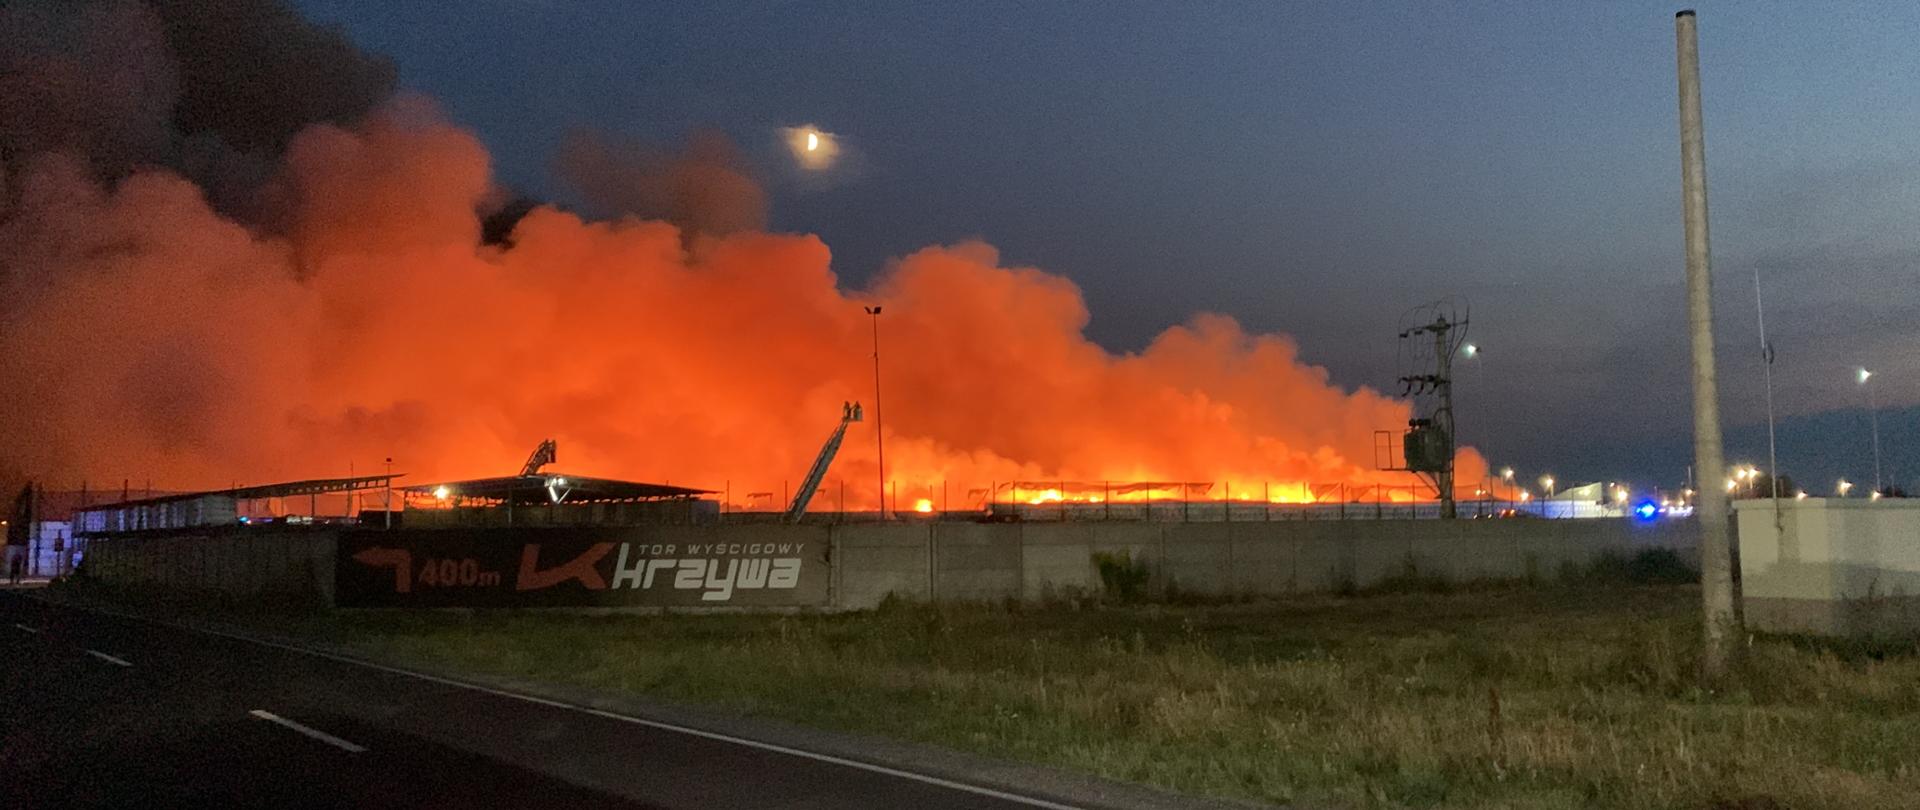 Ogólny widok pożaru